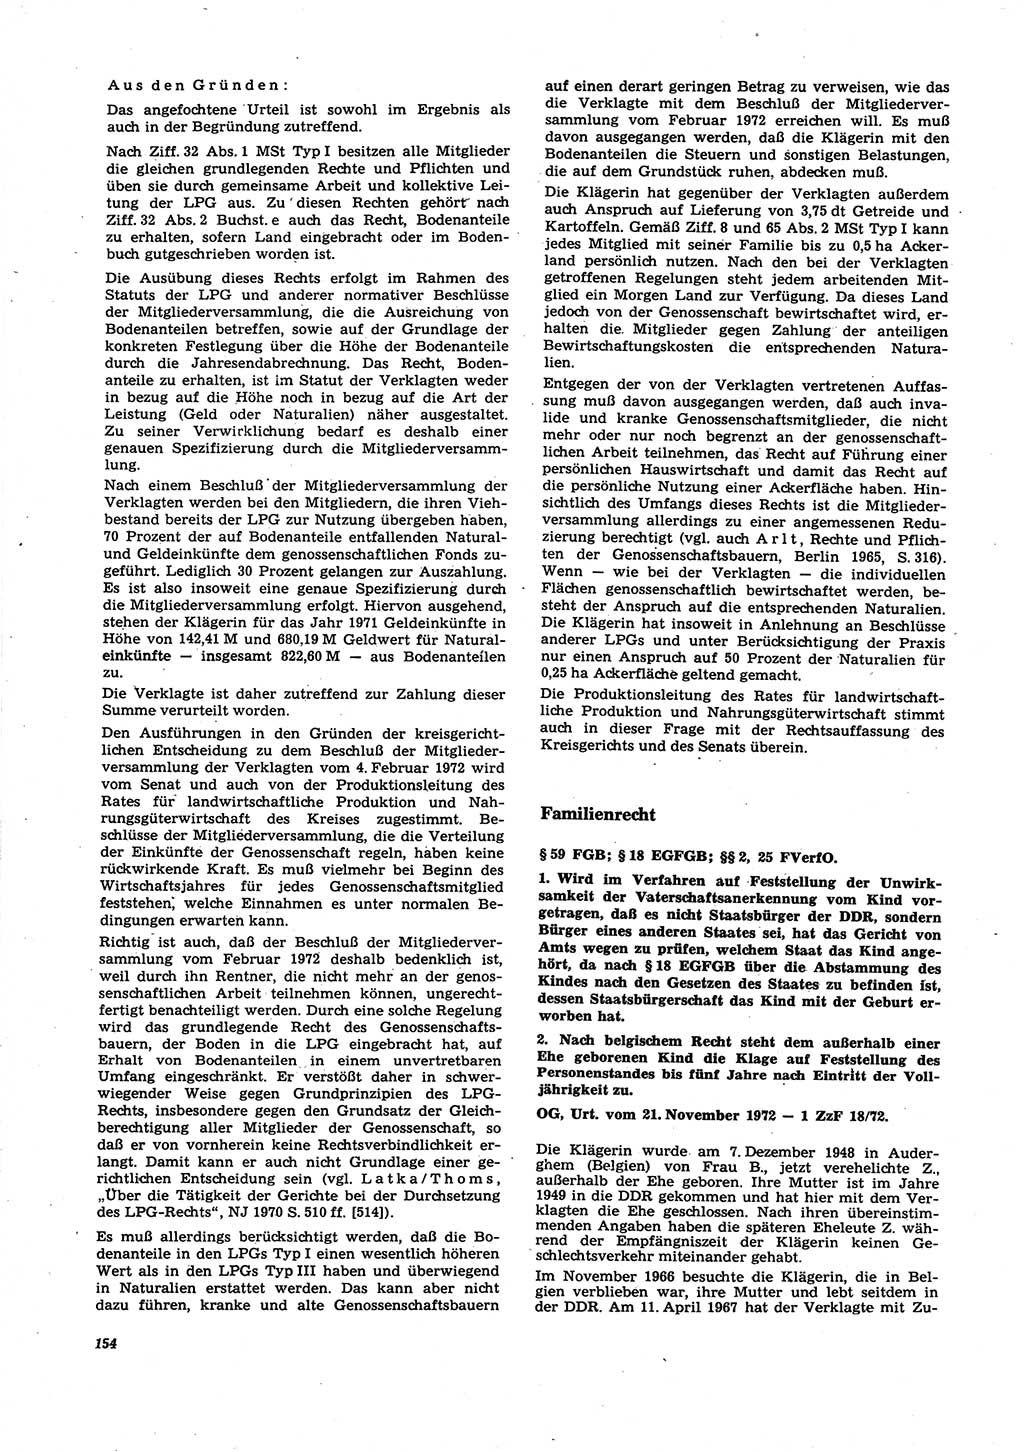 Neue Justiz (NJ), Zeitschrift für Recht und Rechtswissenschaft [Deutsche Demokratische Republik (DDR)], 27. Jahrgang 1973, Seite 154 (NJ DDR 1973, S. 154)